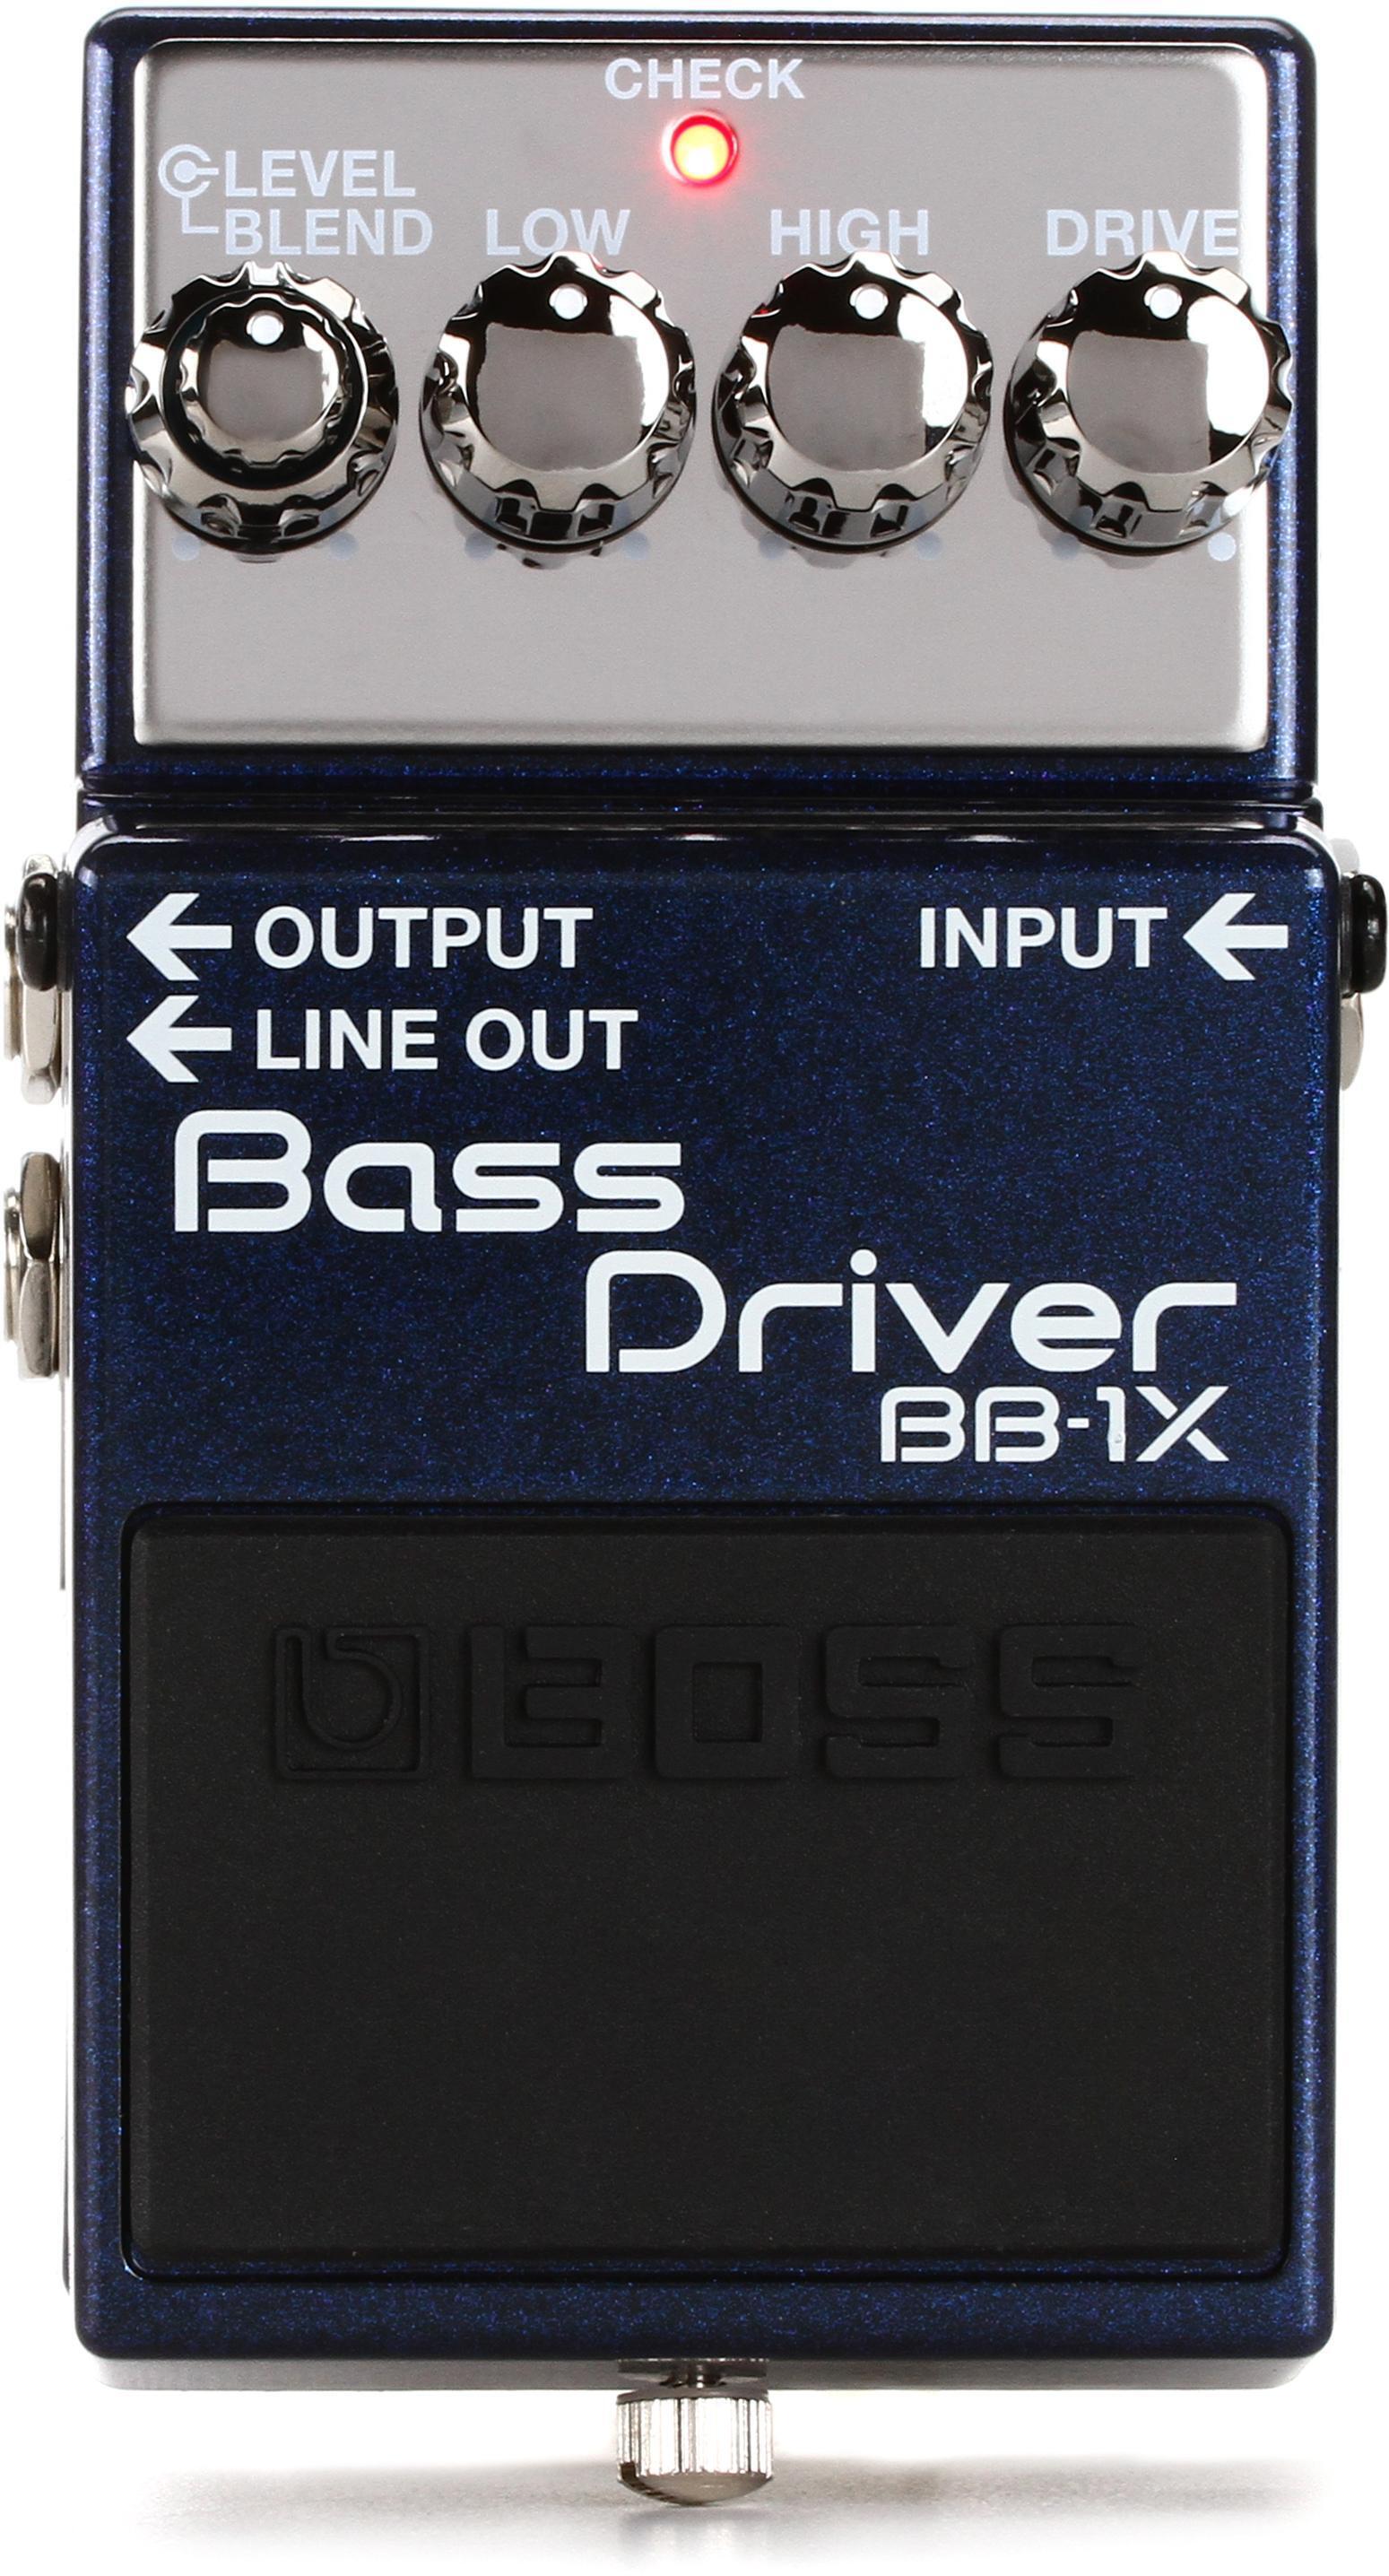 Bundled Item: Boss BB-1X Bass Driver Pedal